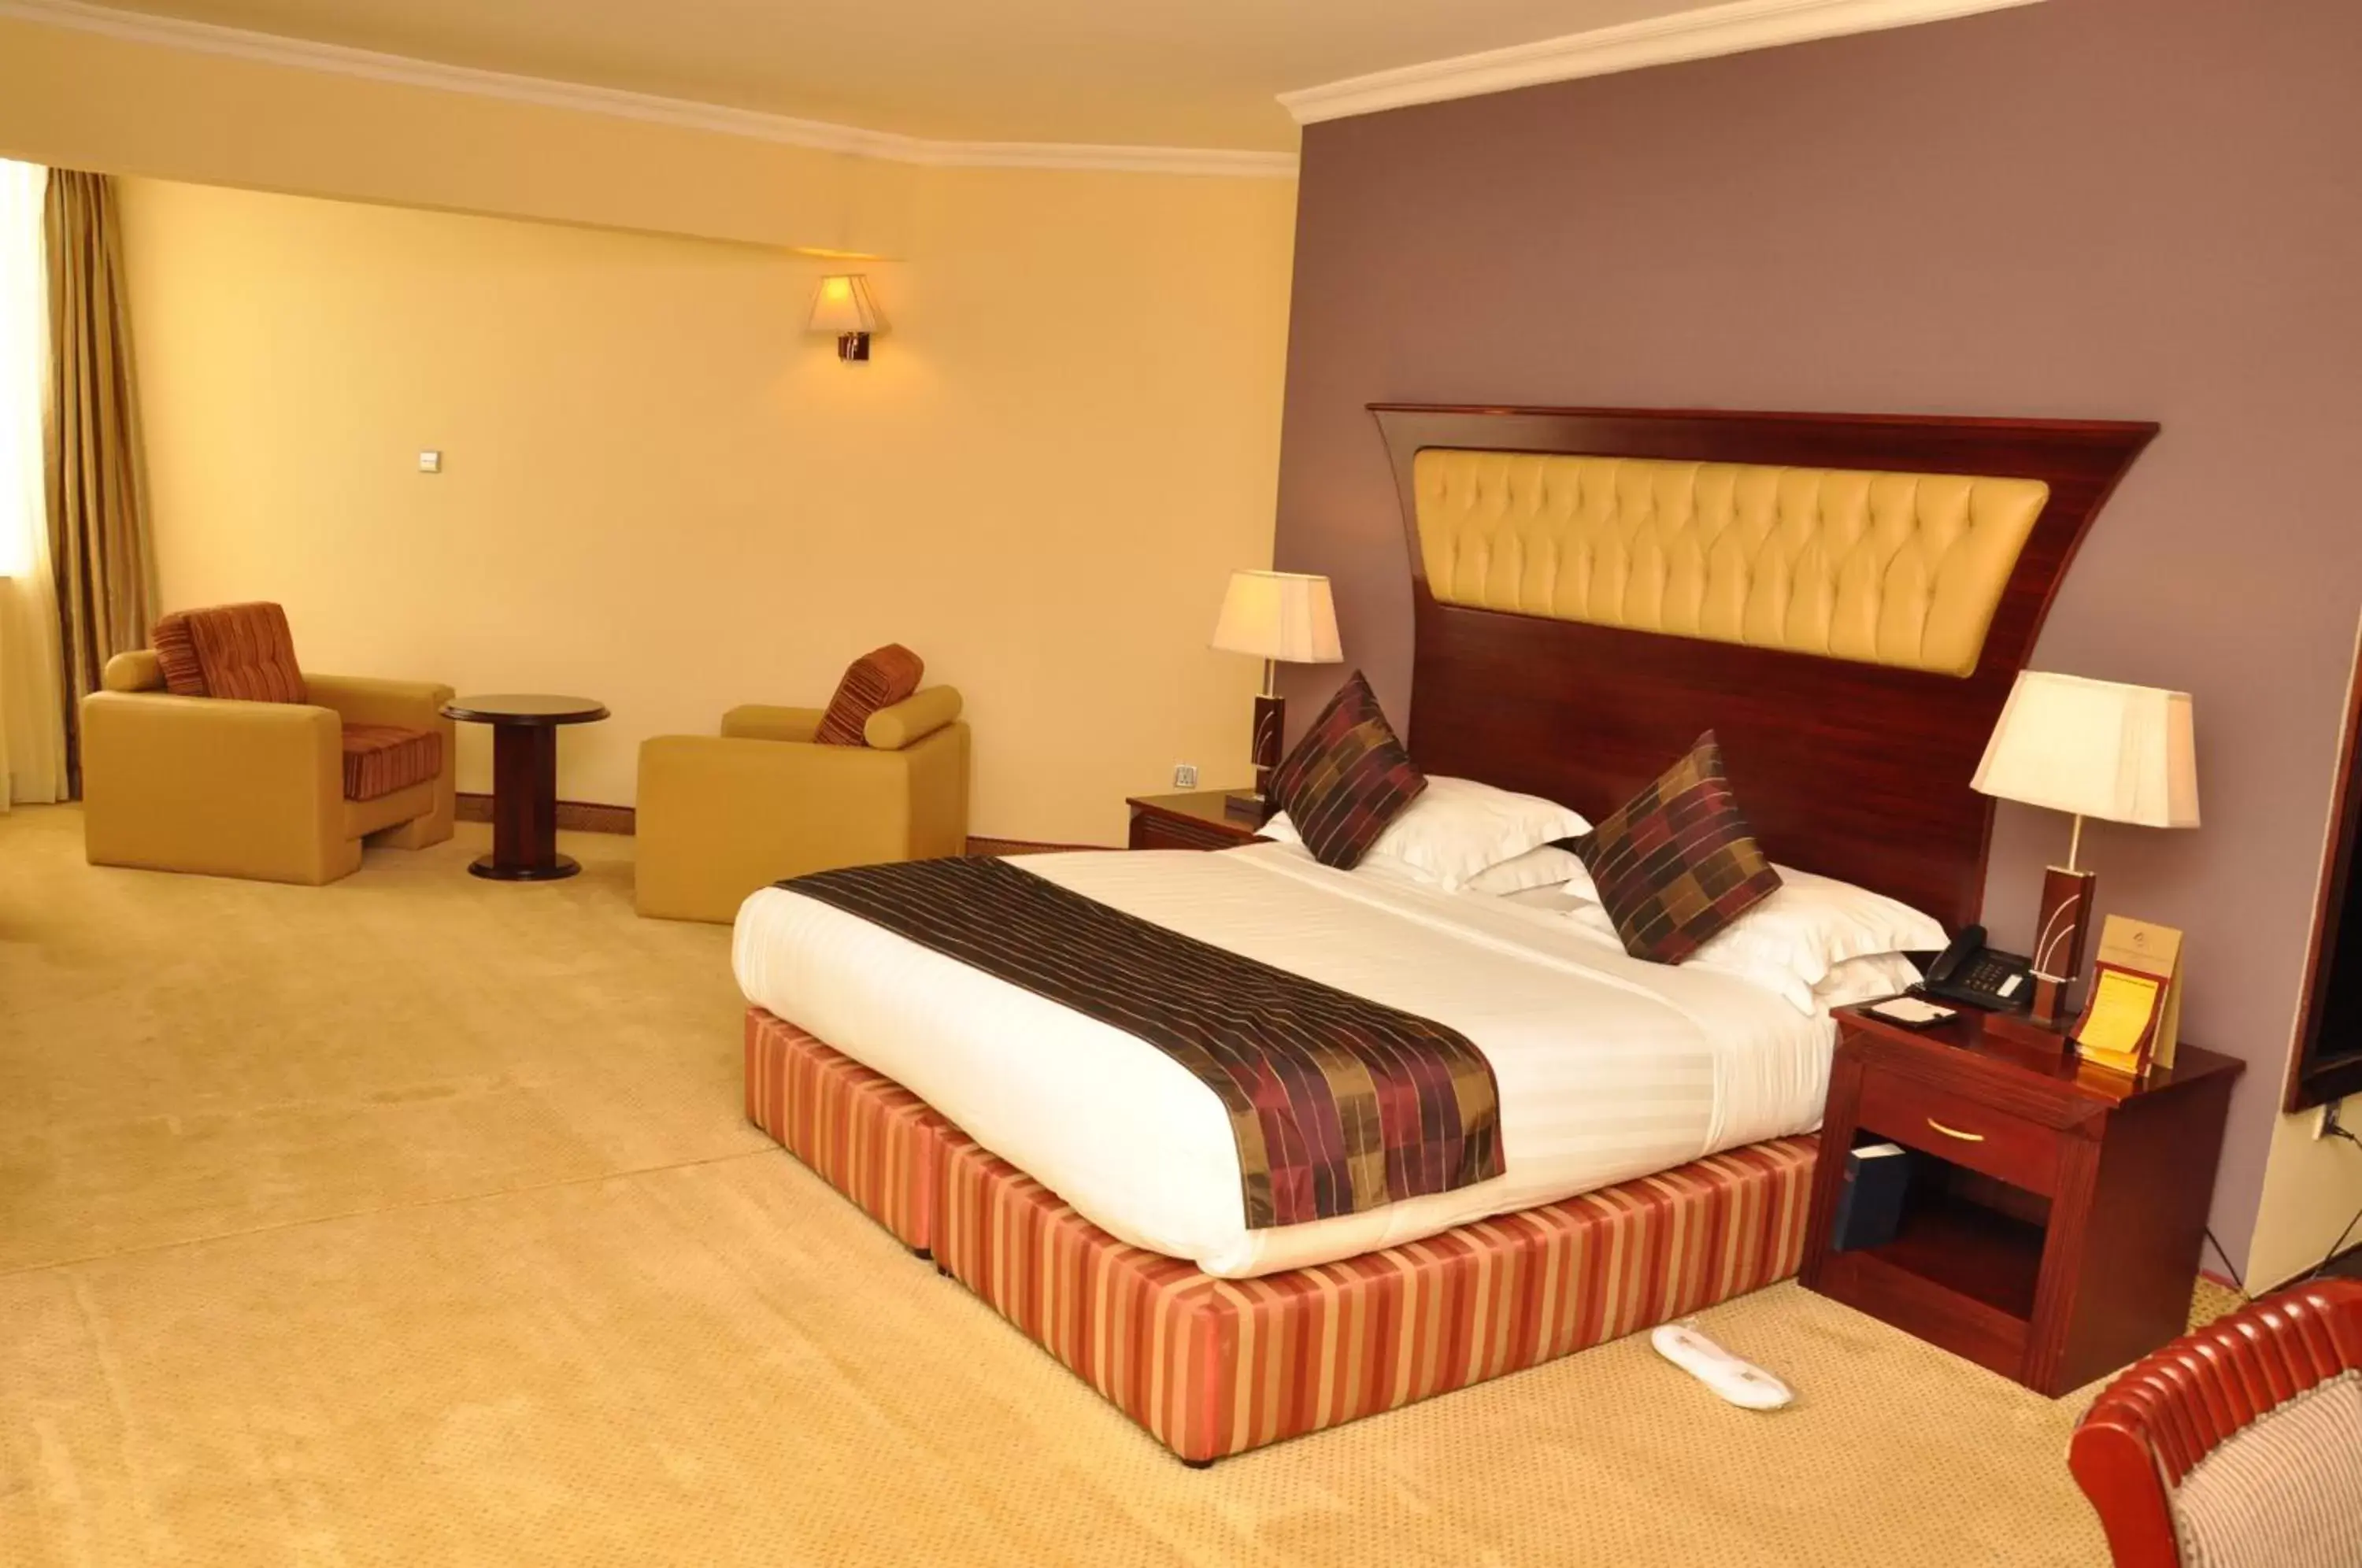 Bedroom, Bed in Inter Luxury Hotel